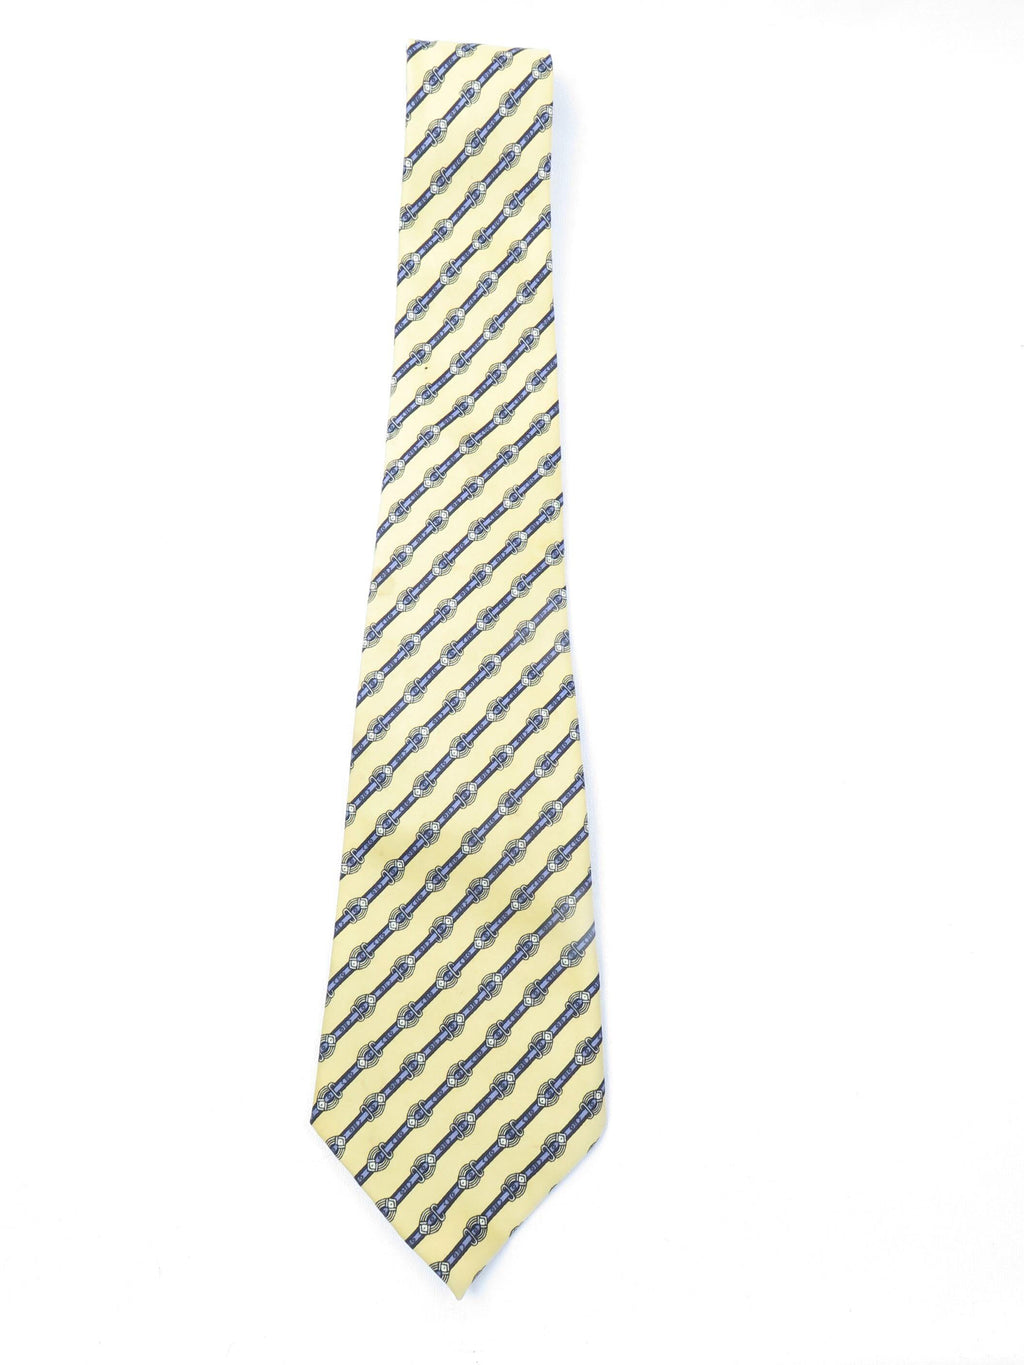 Vintage Monogram Yellow Tie - The Harlequin